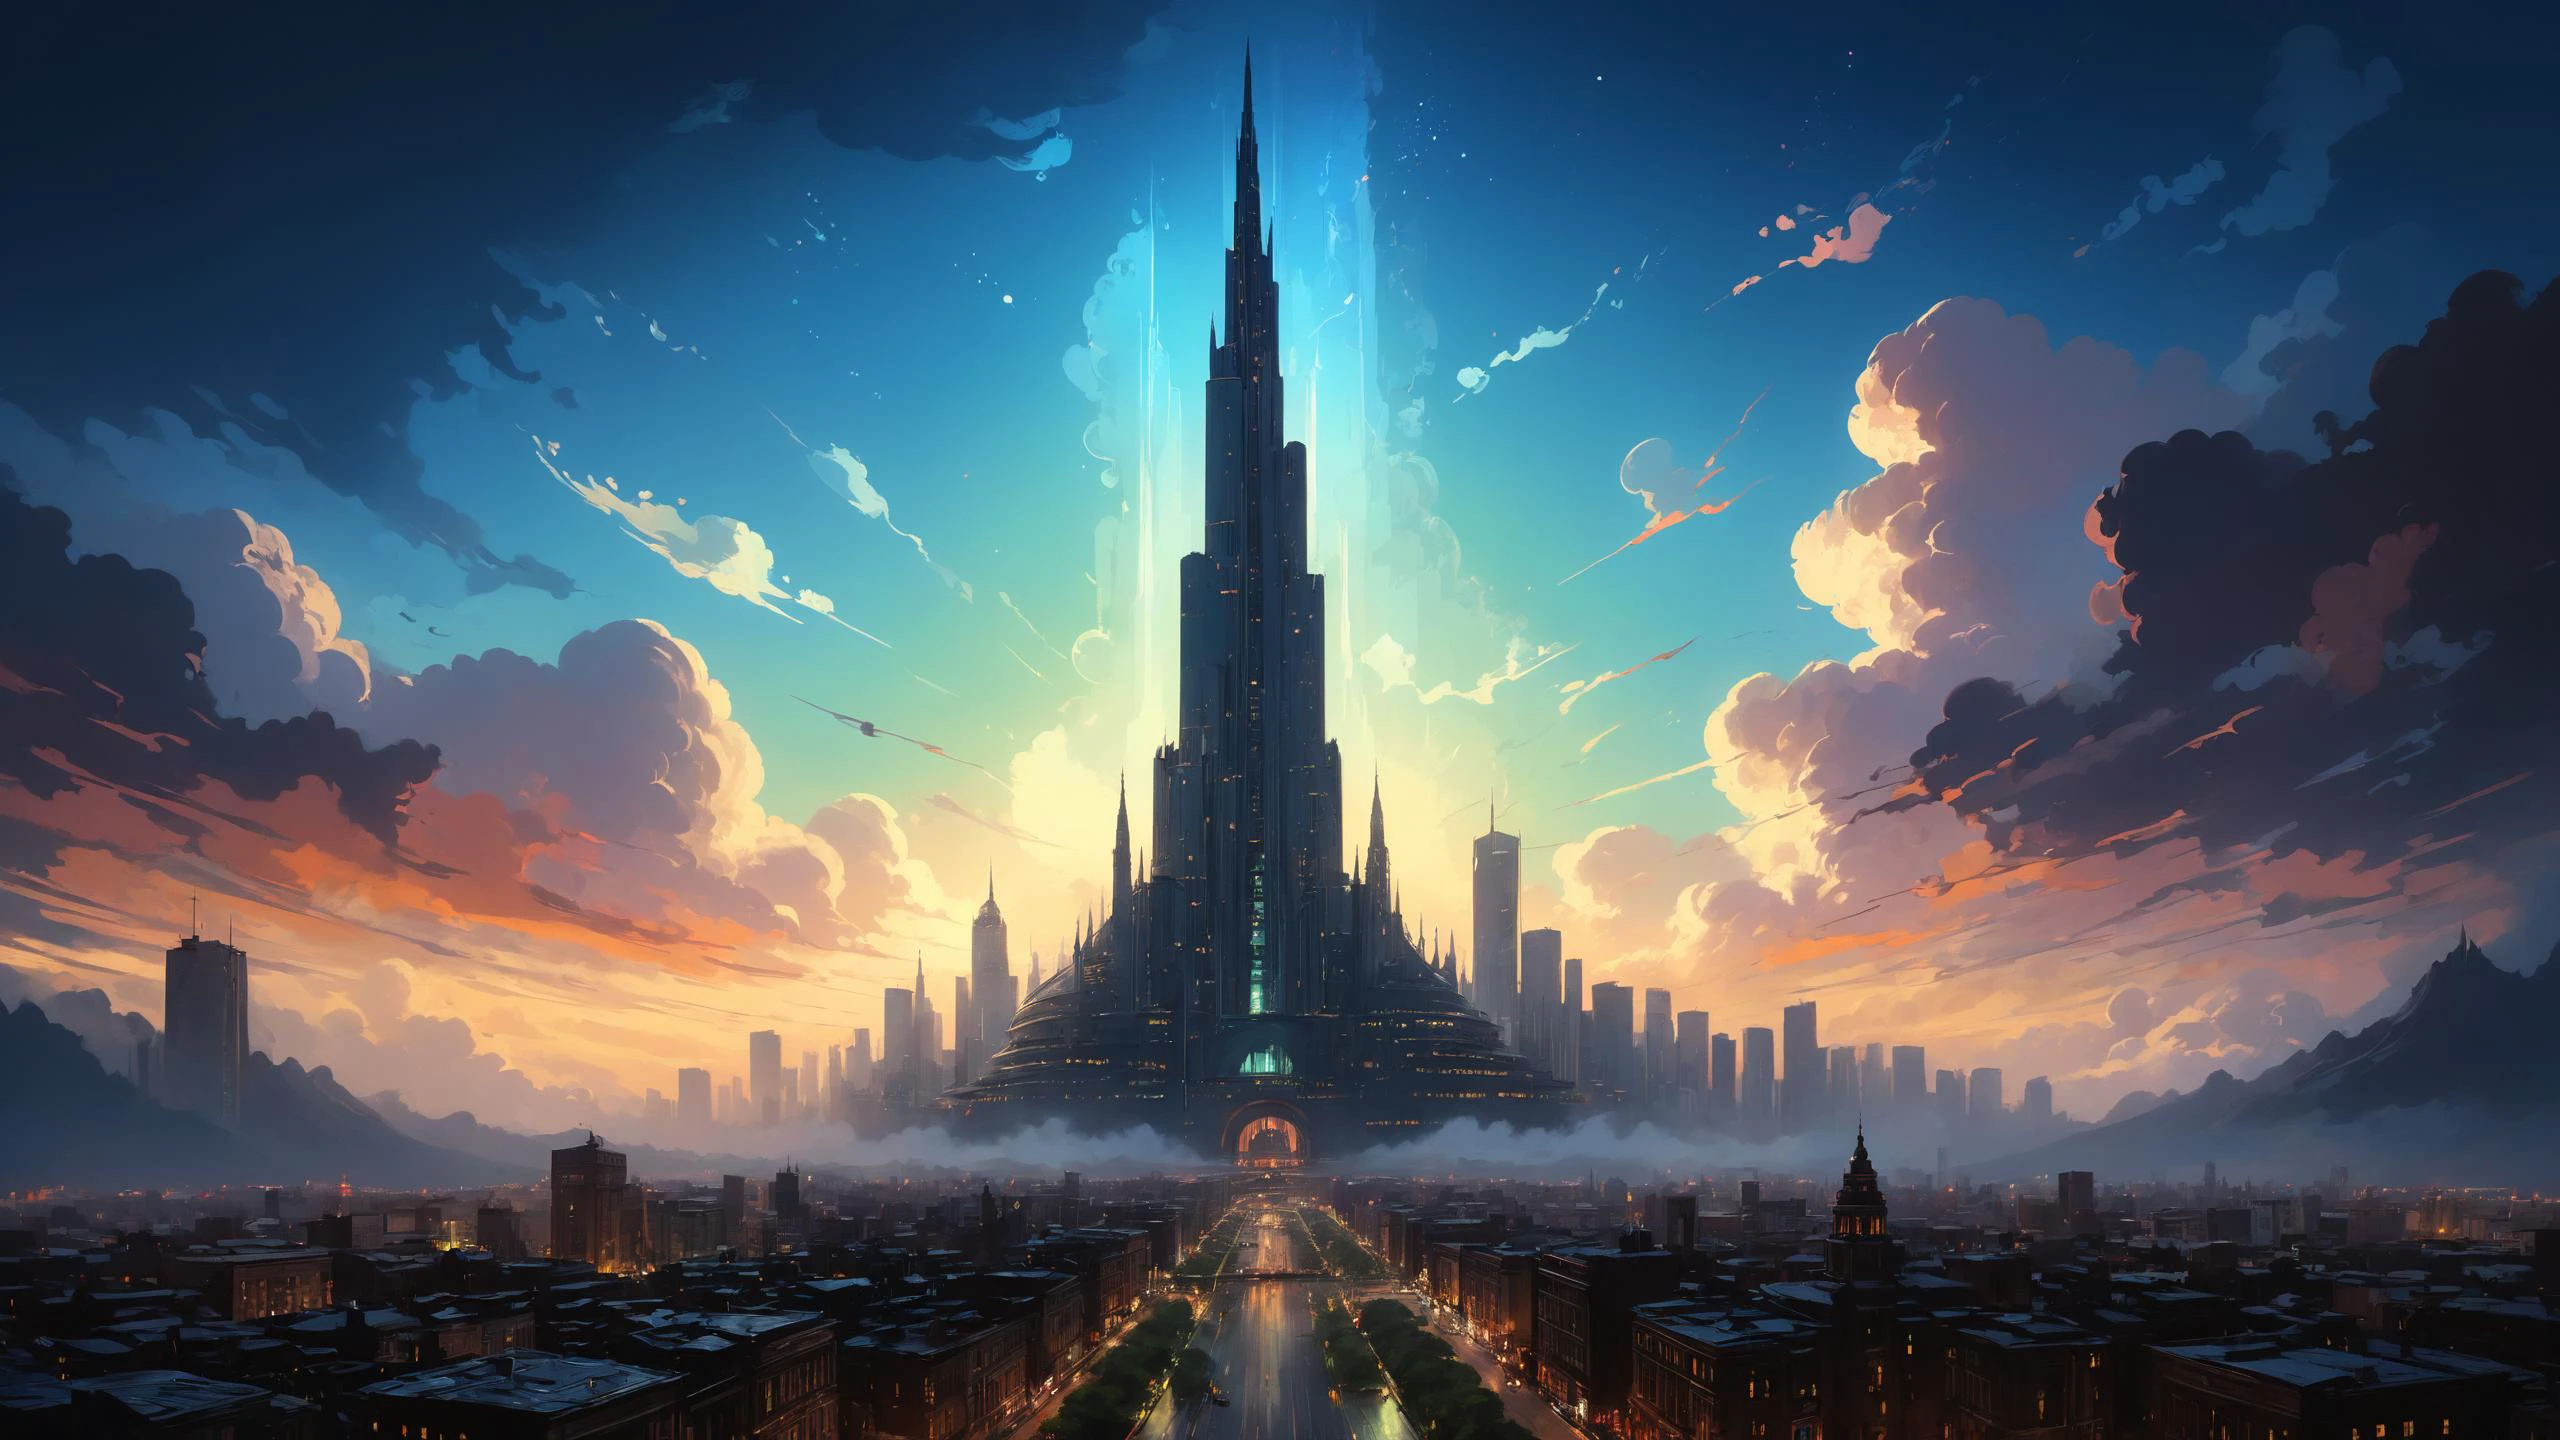 Die Skyline der Stadt wird von der imposanten Silhouette des Hauptsitzes eines Großkonzerns dominiert., sein hoher Turm verschwindet in den Wolken,  Irisieren,  PENeonUV